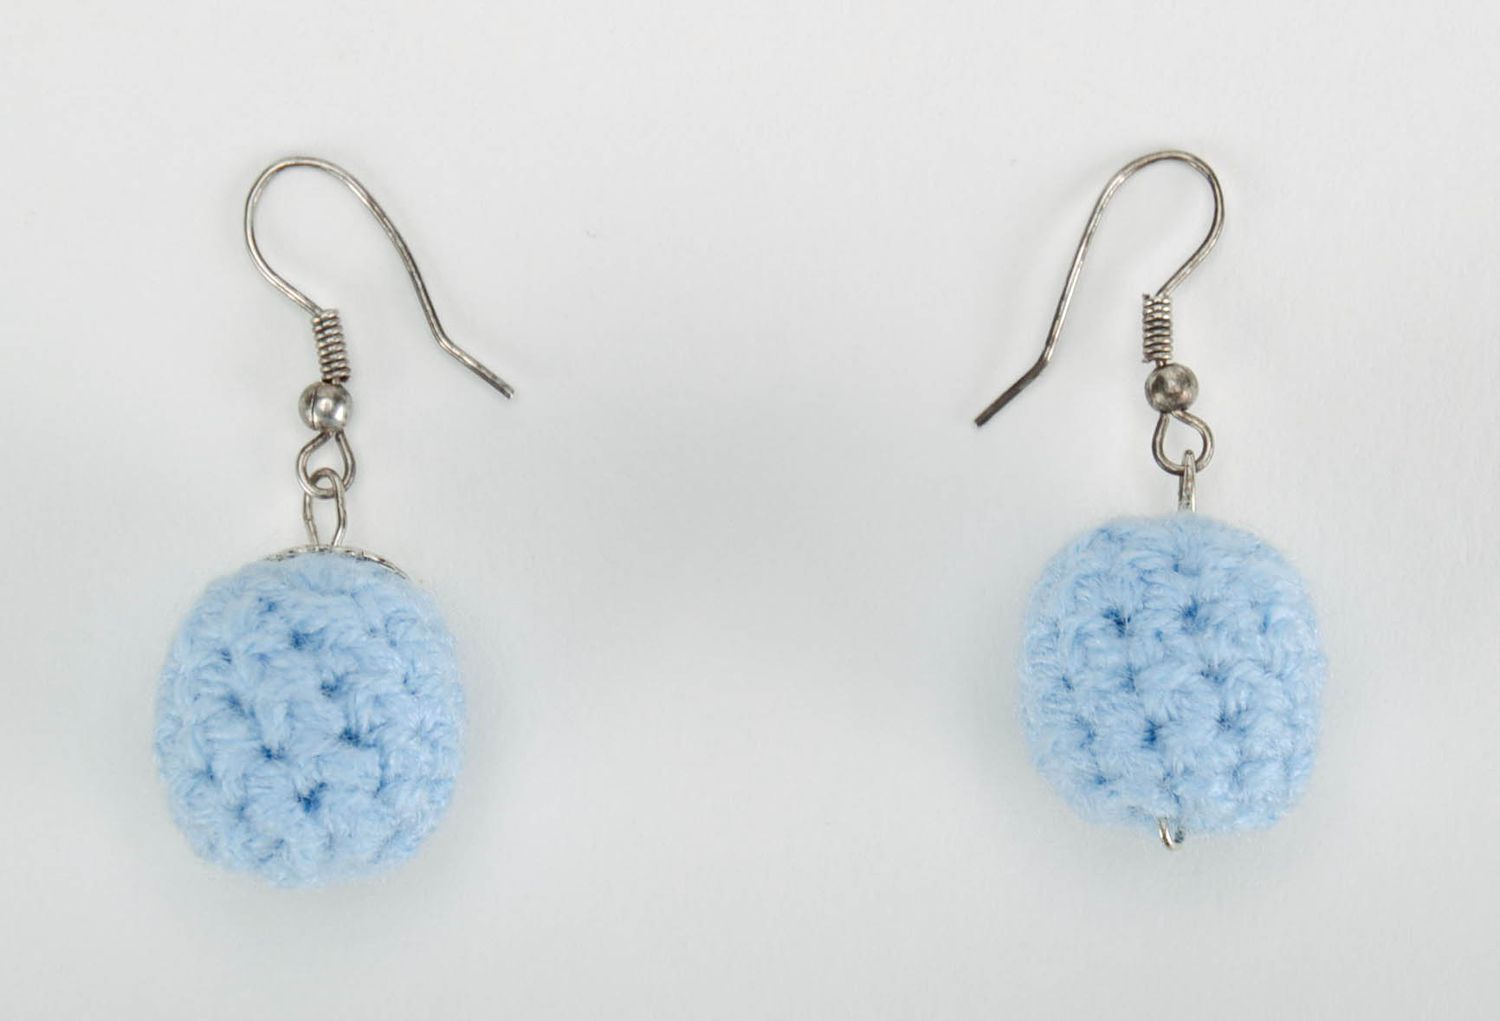 Boucles d'oreilles artisanales tricotées au crochet photo 1